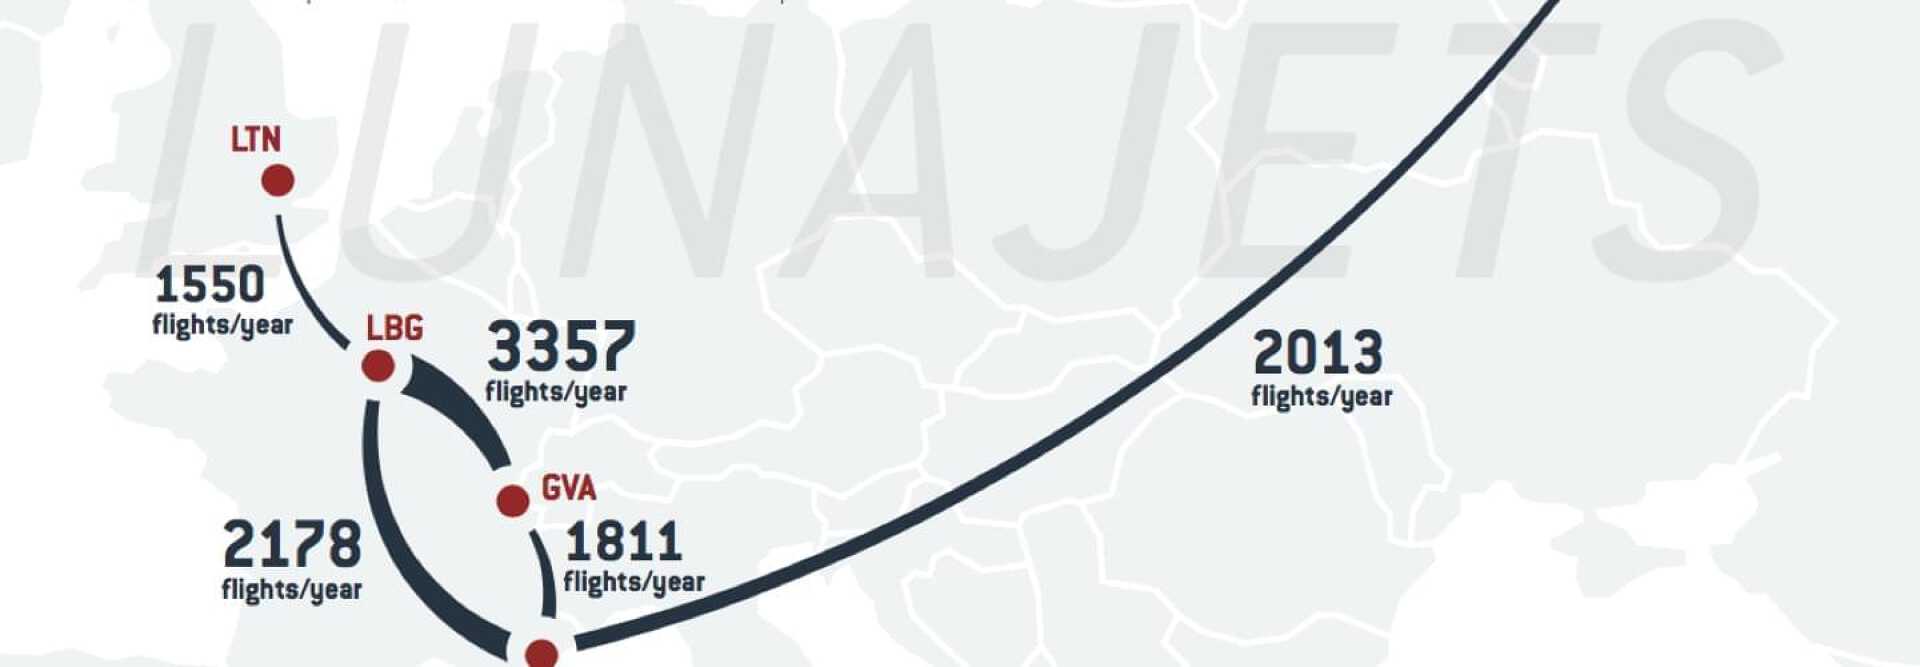 Carte illustrant les 5 roues les plus volées en jet privé en Europe en 2017